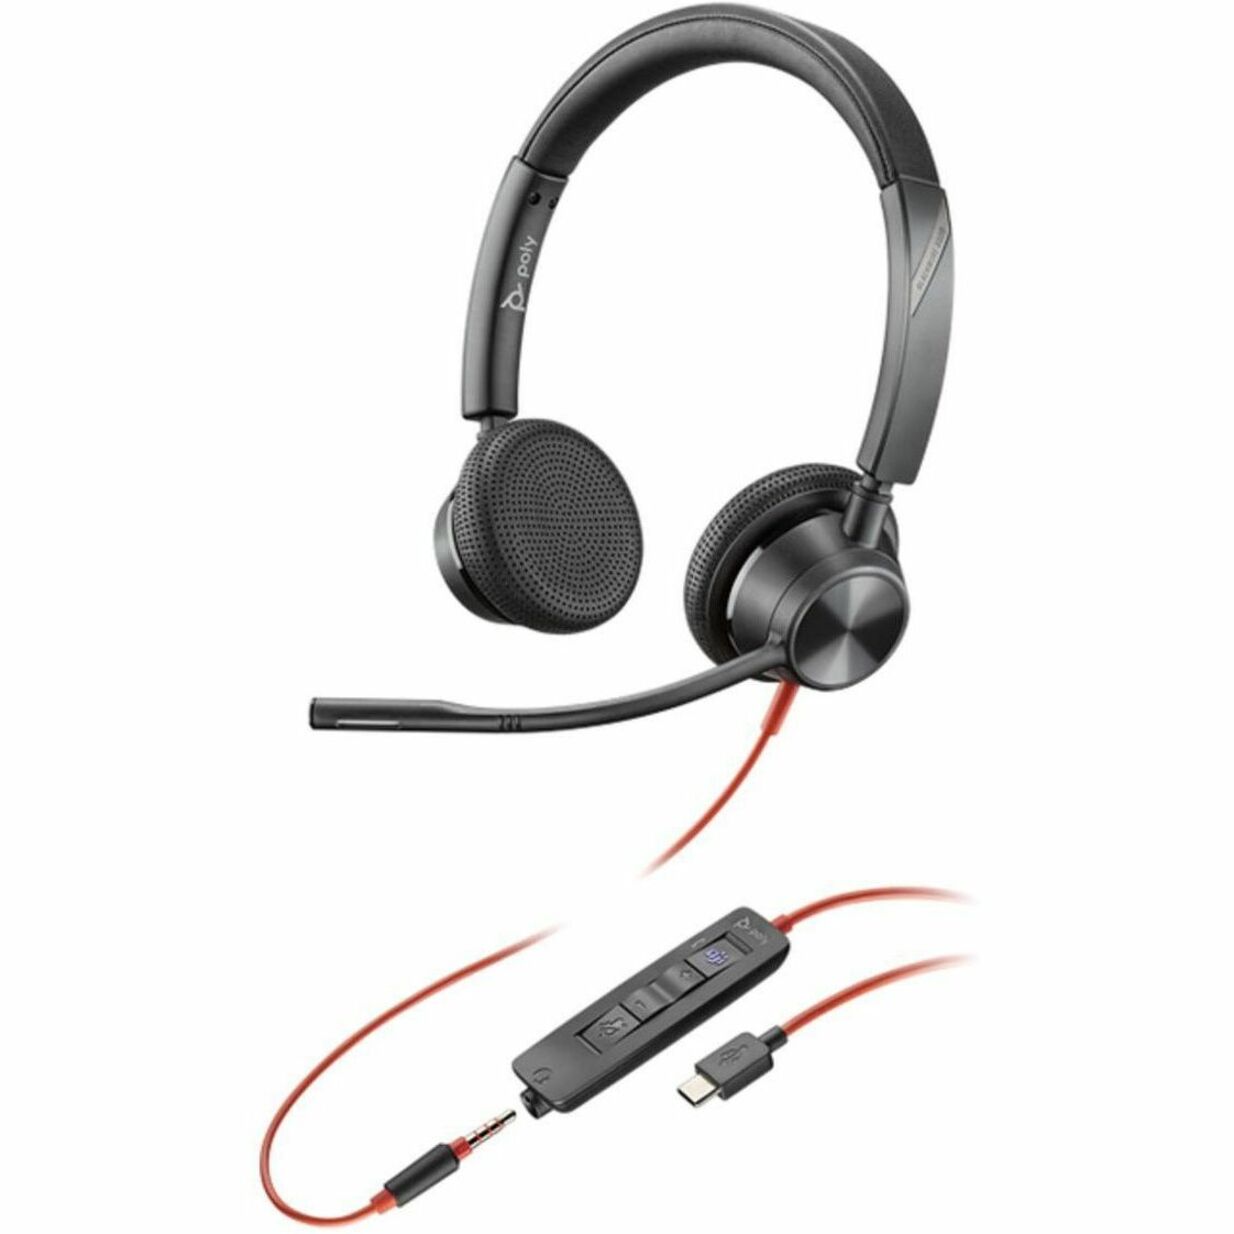 品牌：Poly  型号：8X222AA Blackwire 3325  类型：头戴式立体声耳机  特点：带有麦克风的头戴式立体声耳机